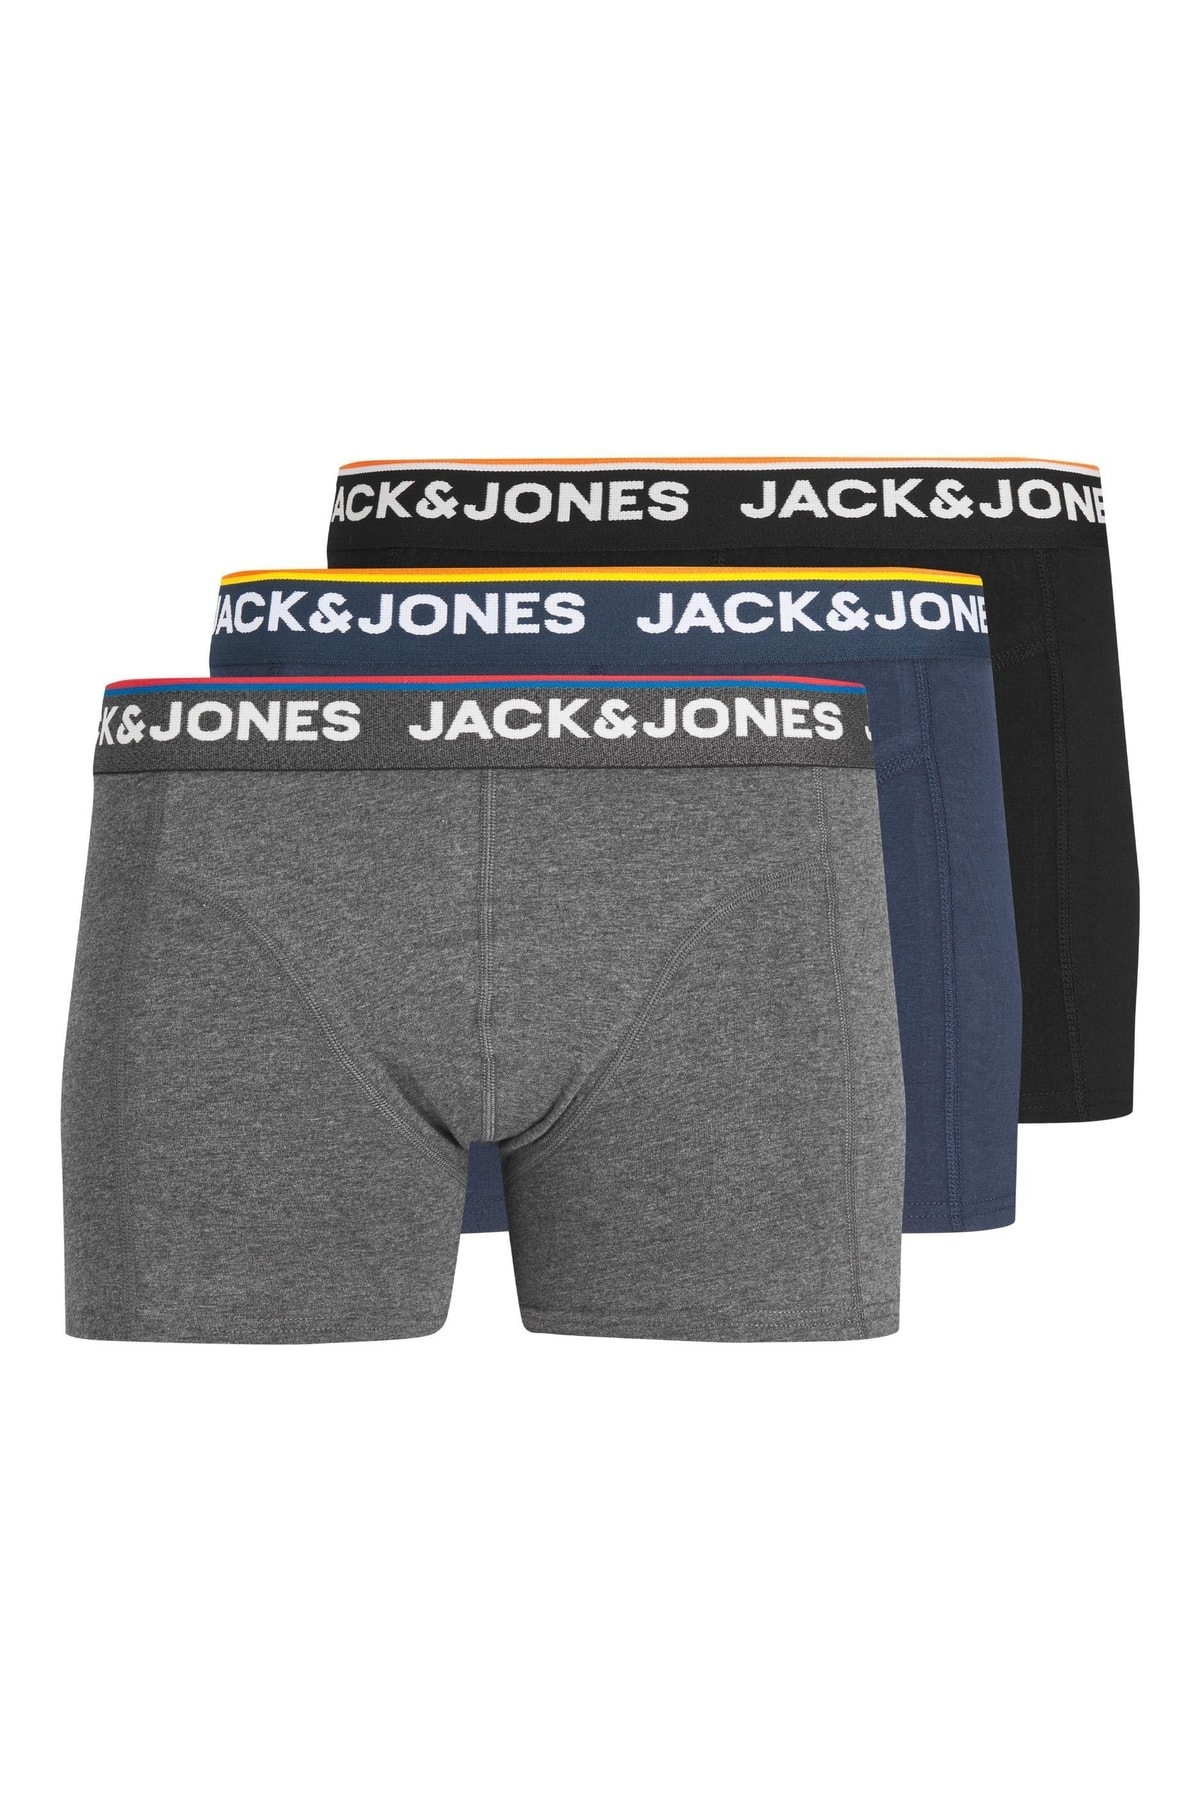 Jack & Jones Boxershorts Grau 3-teilig Fast ausverkauft